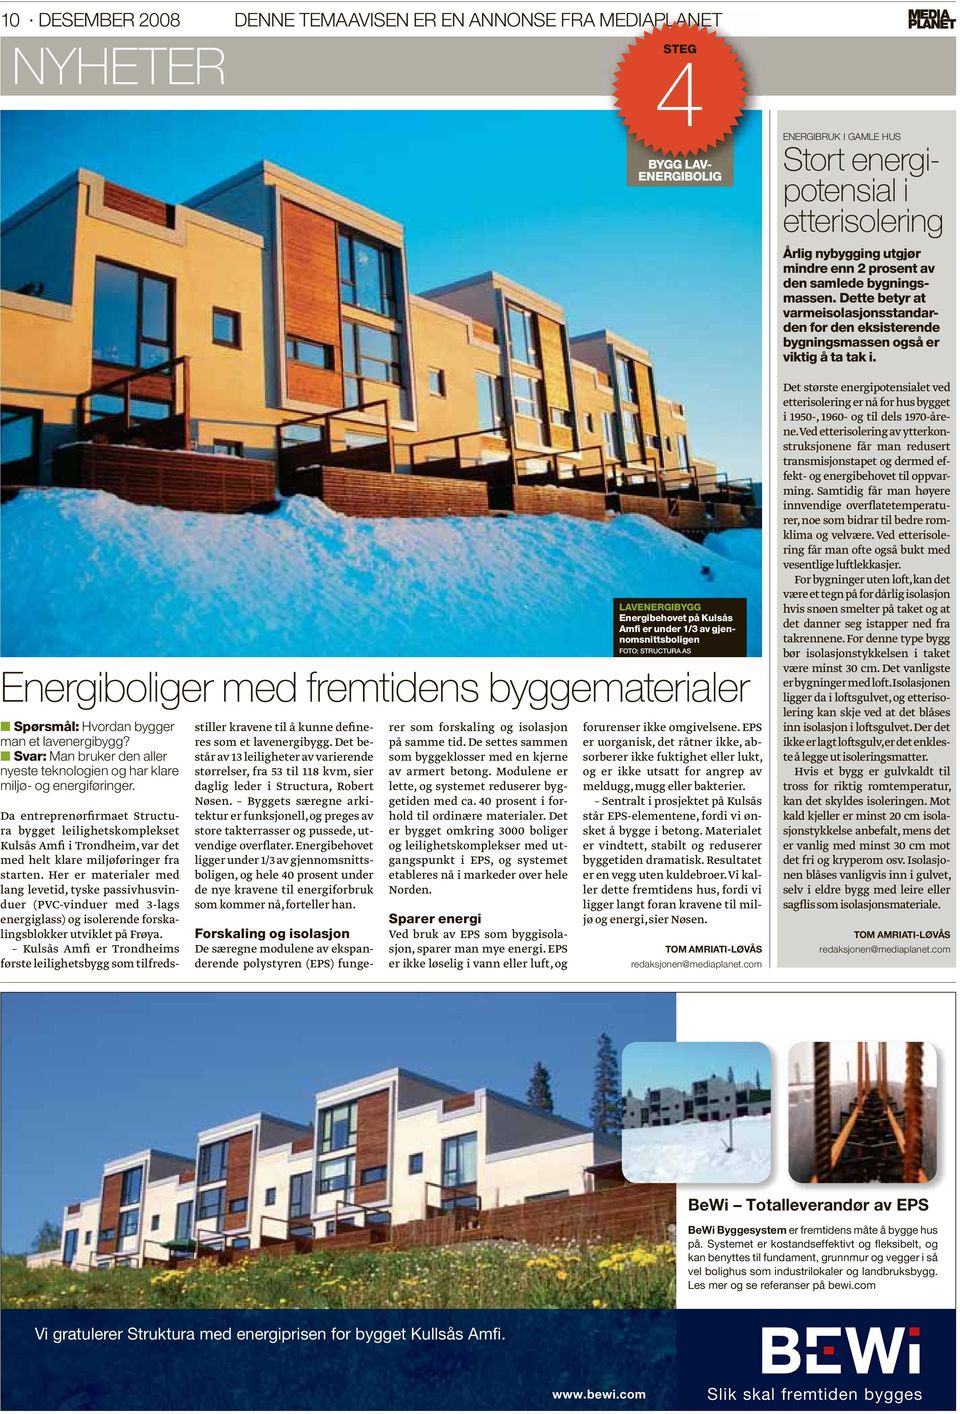 Kulsås Amfi er Trondheims første leilighetsbygg som tilfredsstiller kravene til å kunne defineres som et lavenergibygg.